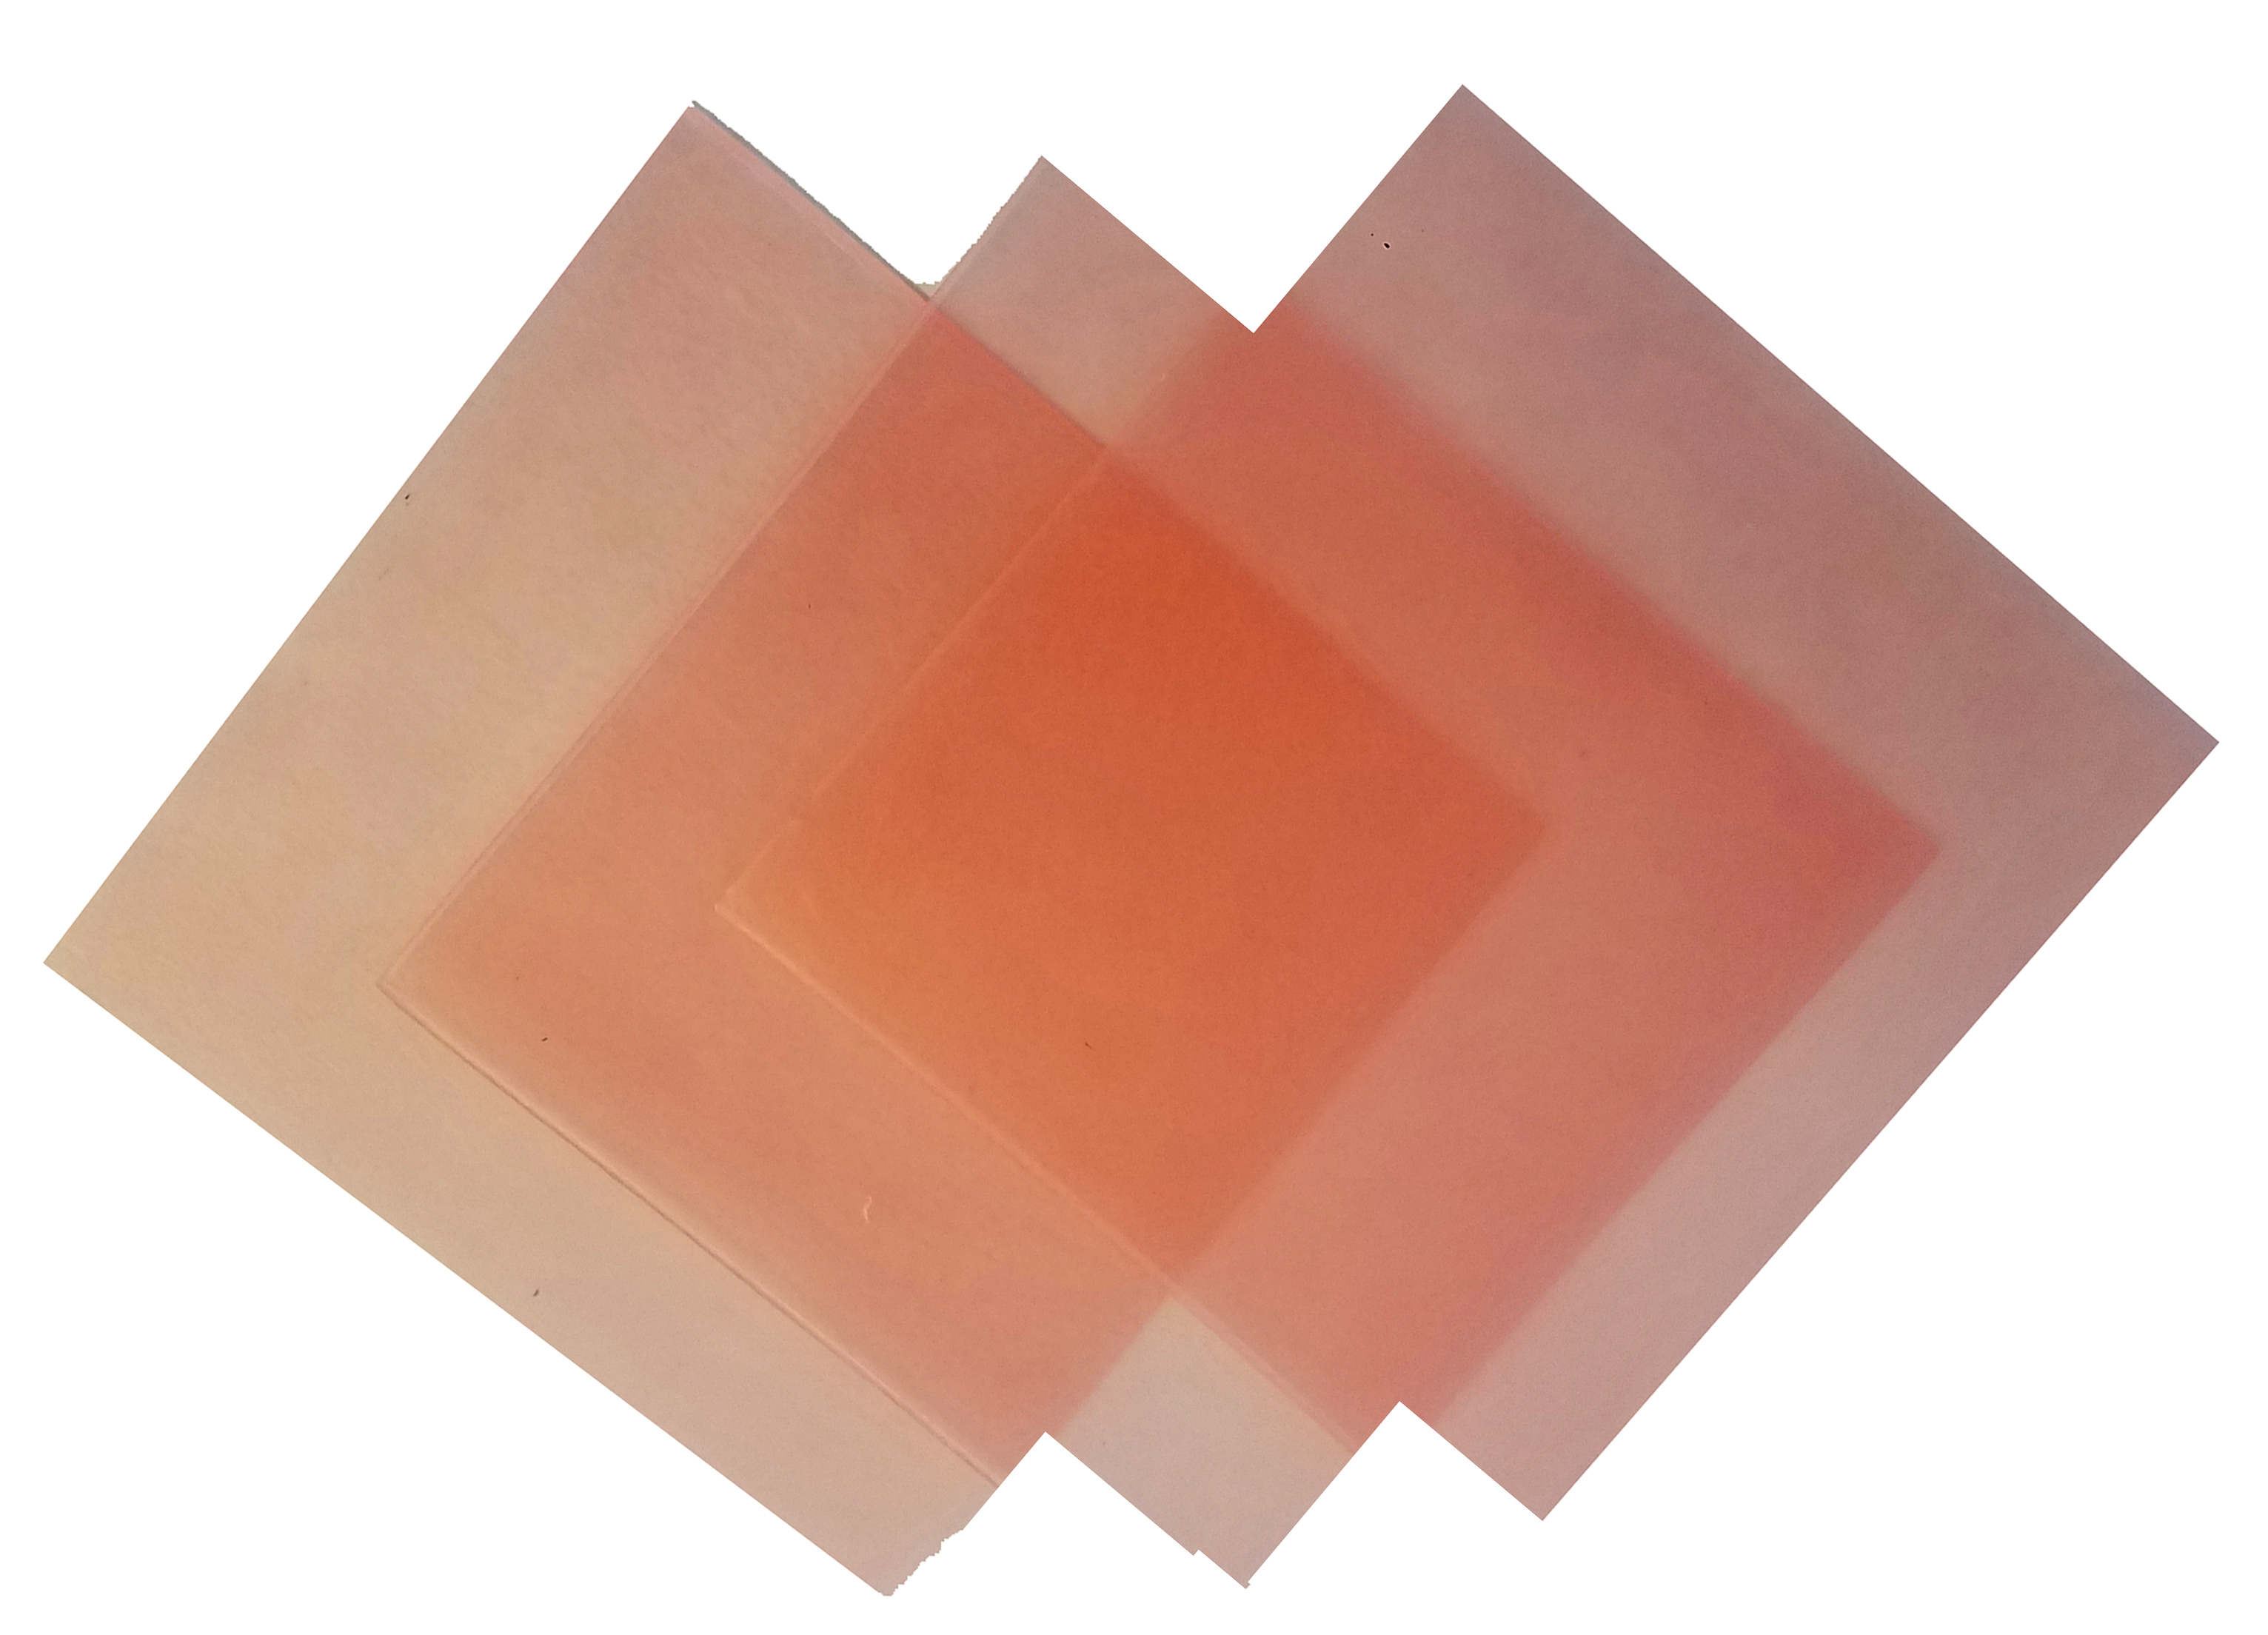 4"x4" sheet wax 16 gauge pink